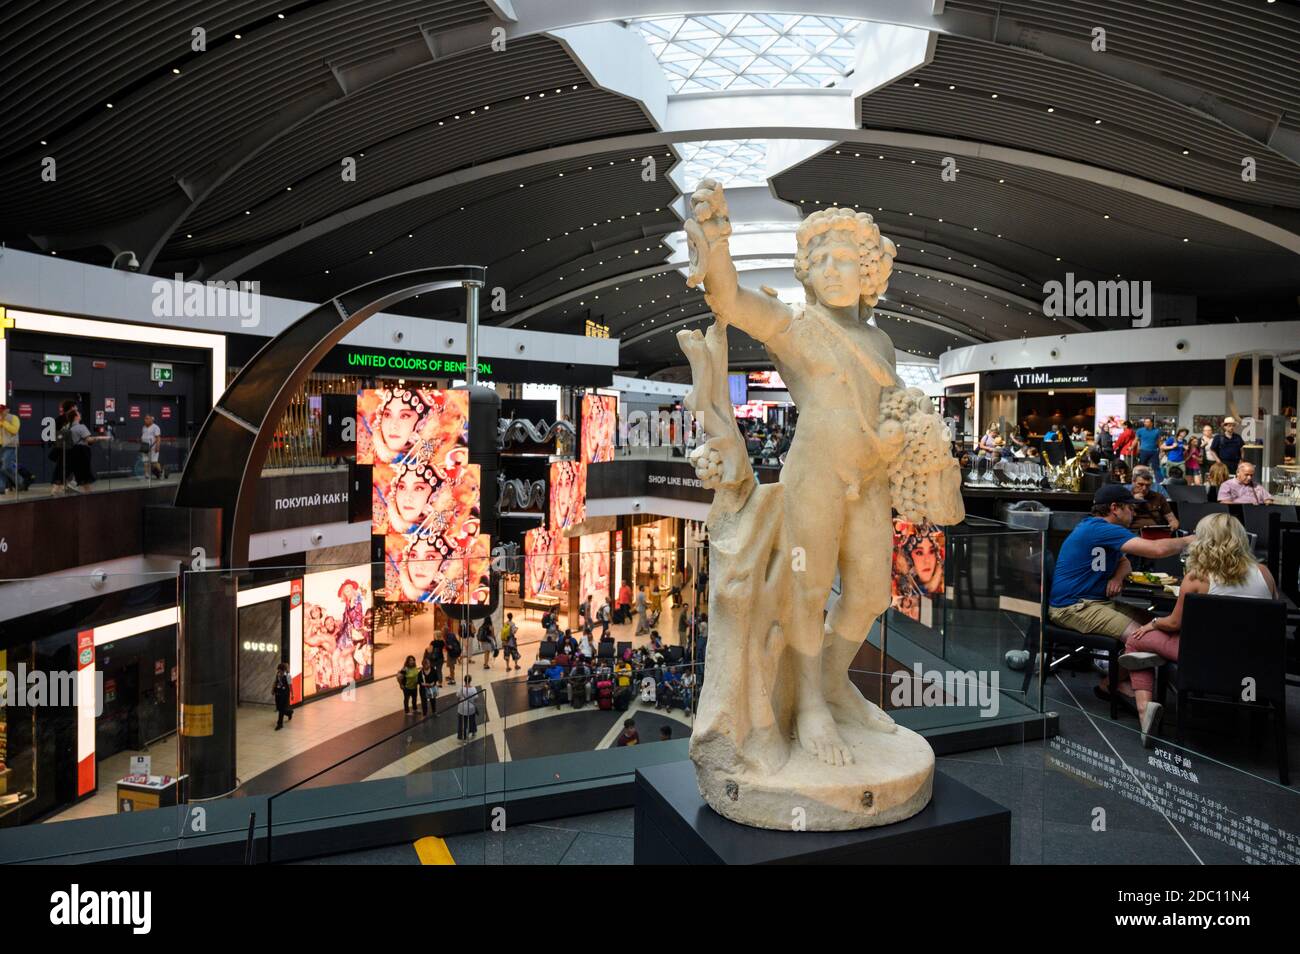 Roma. Italia. Antica statua romana in mostra all'aeroporto internazionale Leonardo da Vinci di Roma Fiumicino. (Aeroporto internazionale Leonardo da Vinci). Foto Stock